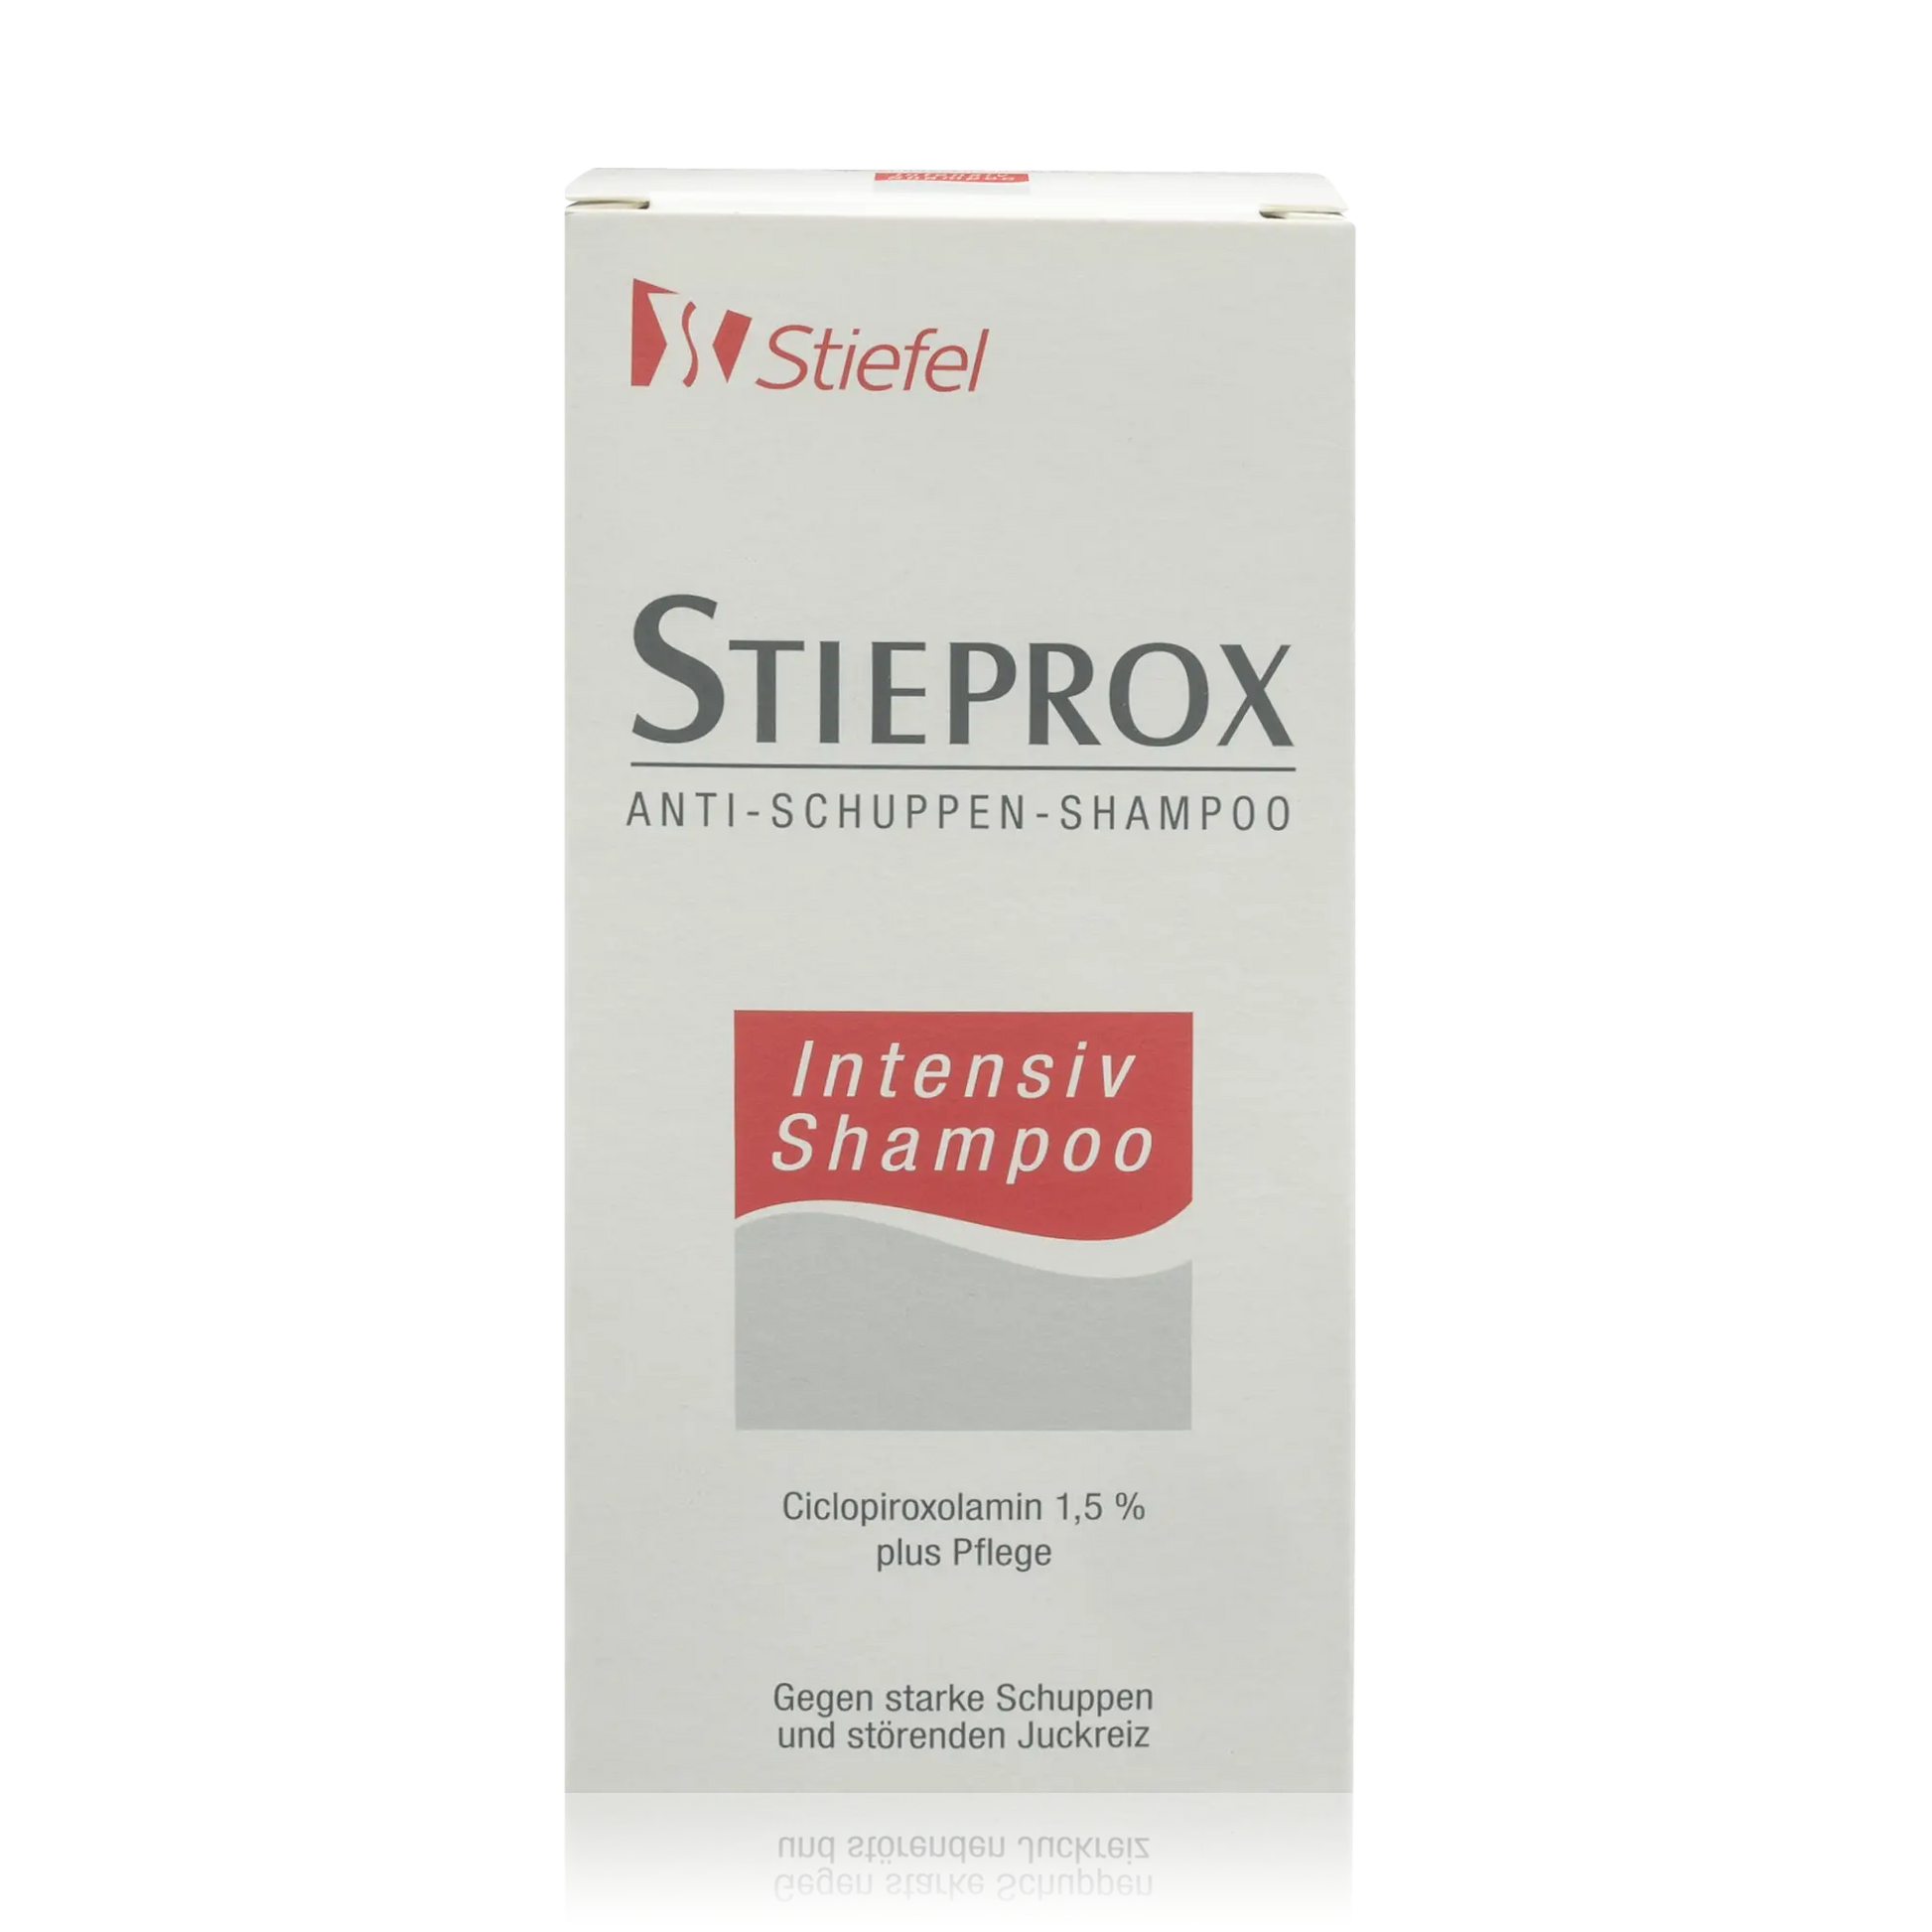 Stieprox Anti-Schuppen-Shampoo (100ml) - ROTE.PLACE